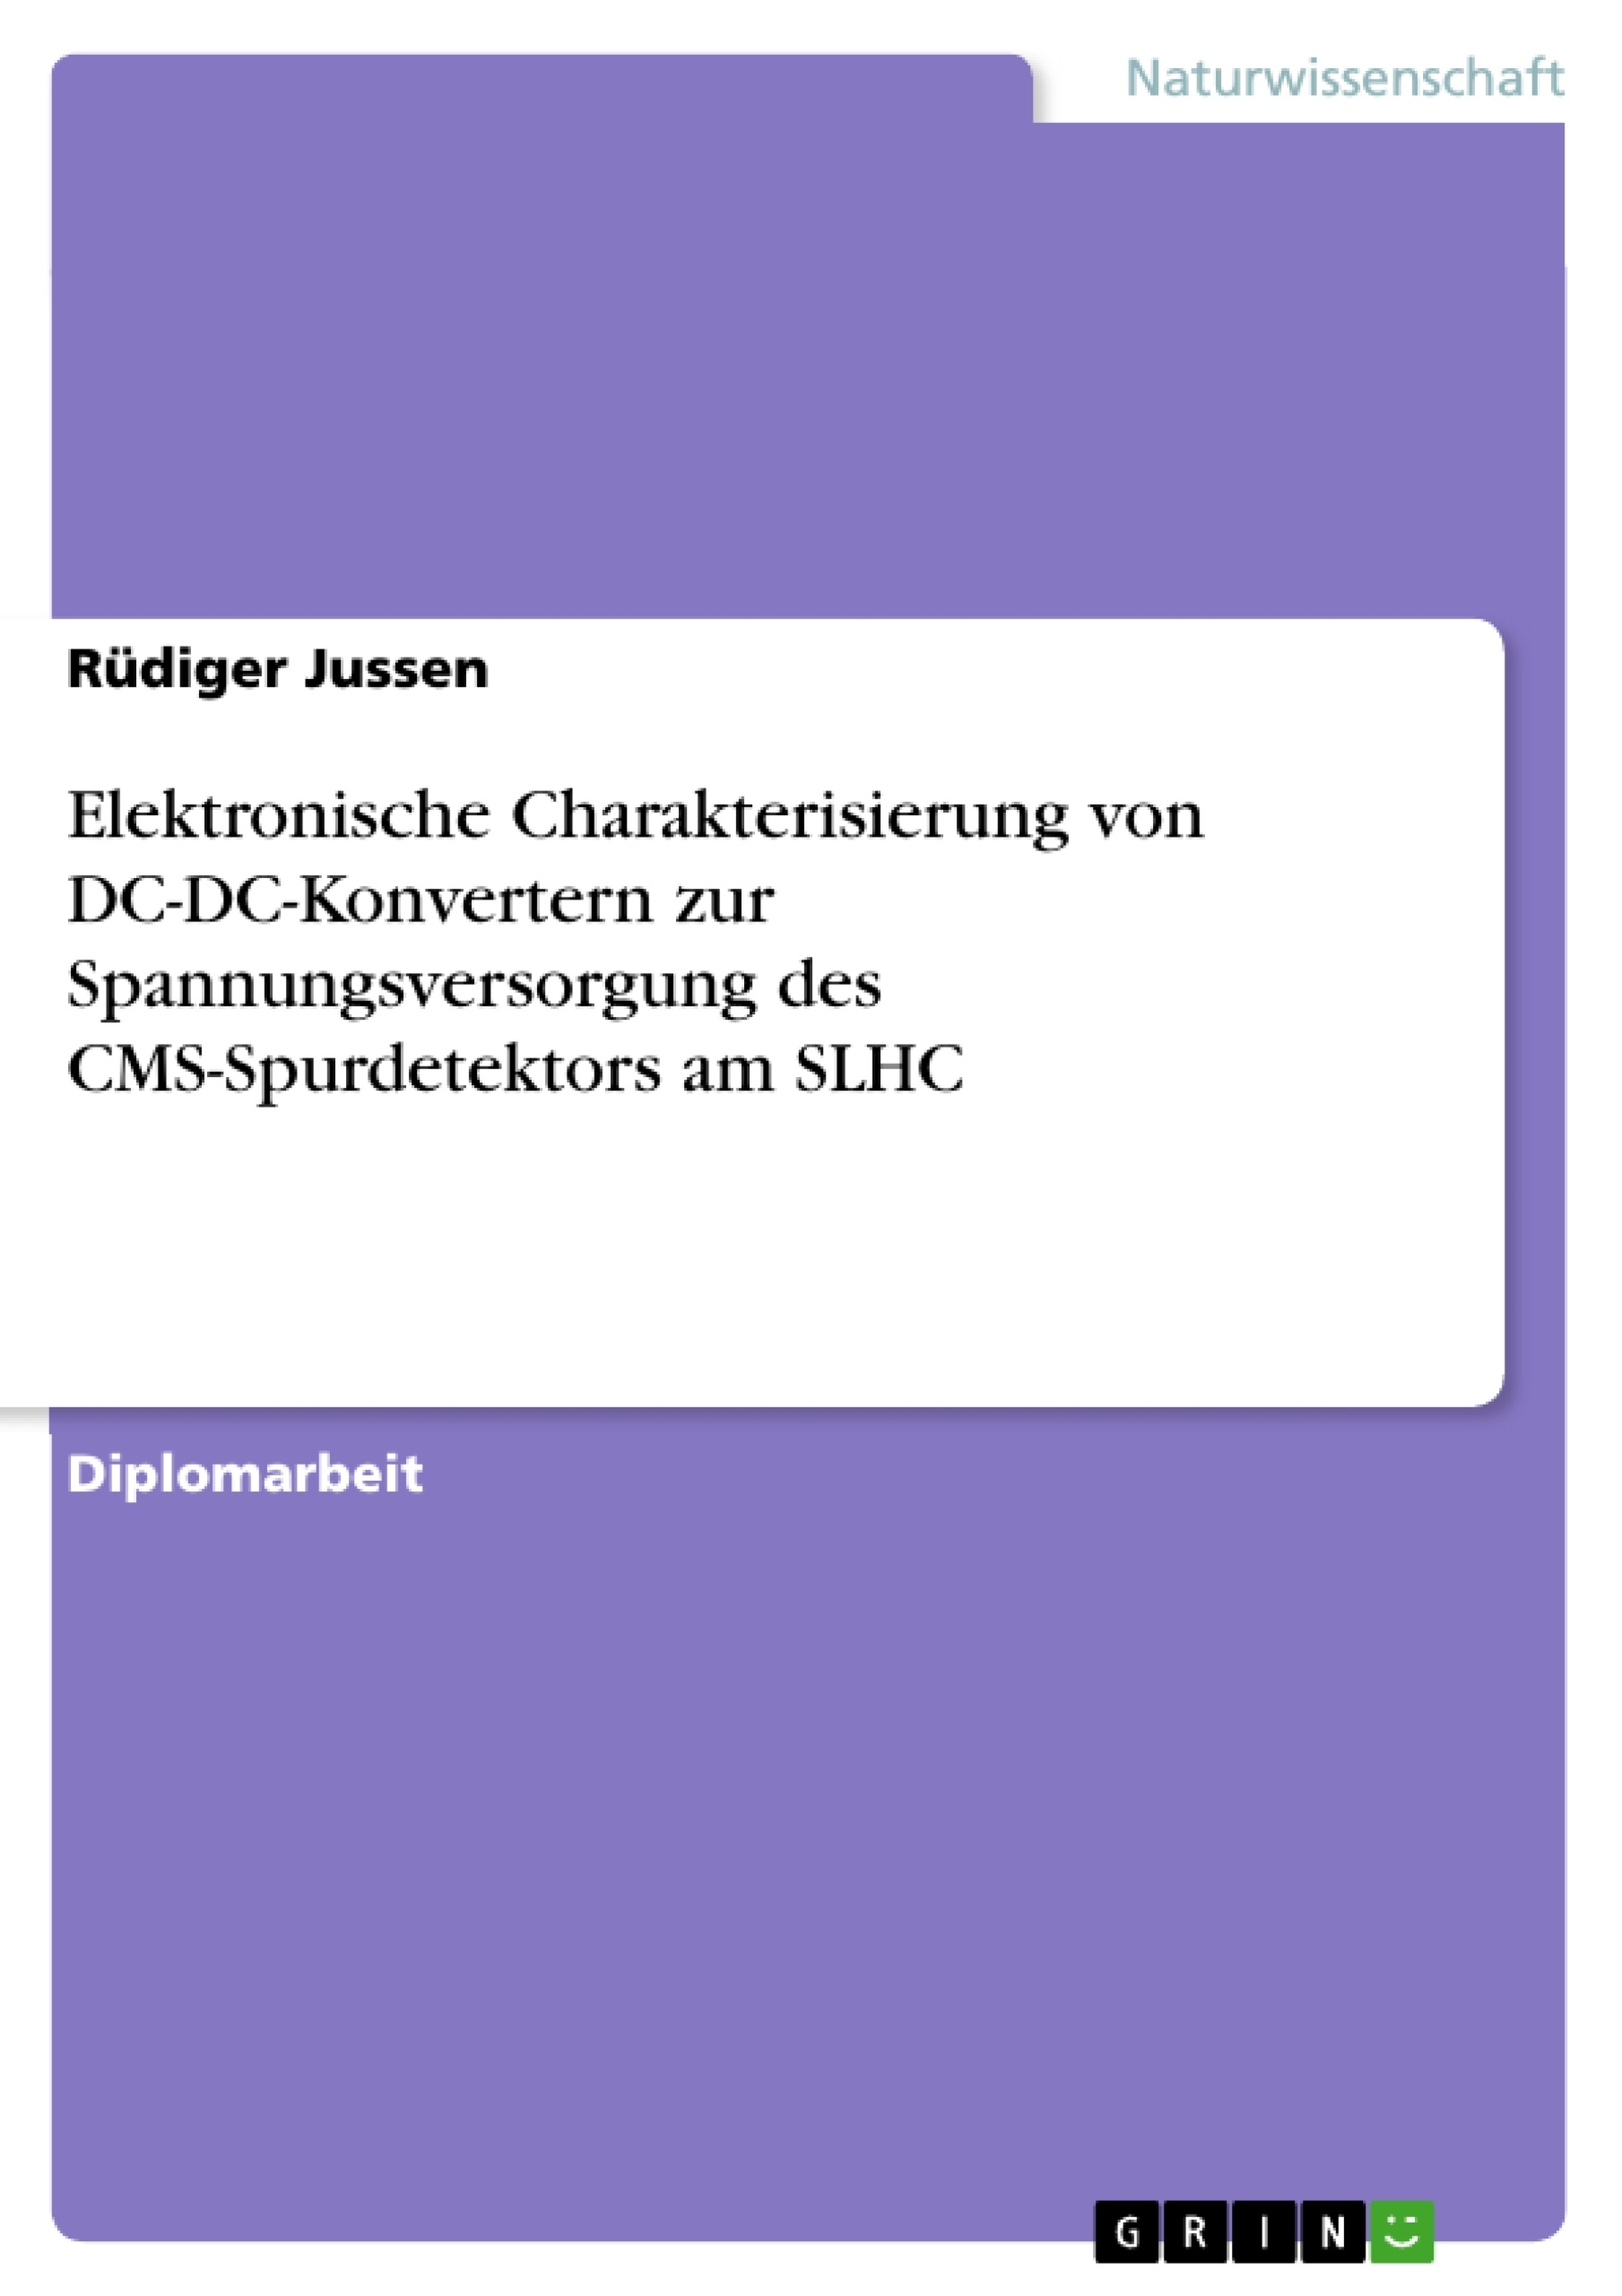 Titre: Elektronische Charakterisierung von DC-DC-Konvertern zur Spannungsversorgung des CMS-Spurdetektors am SLHC